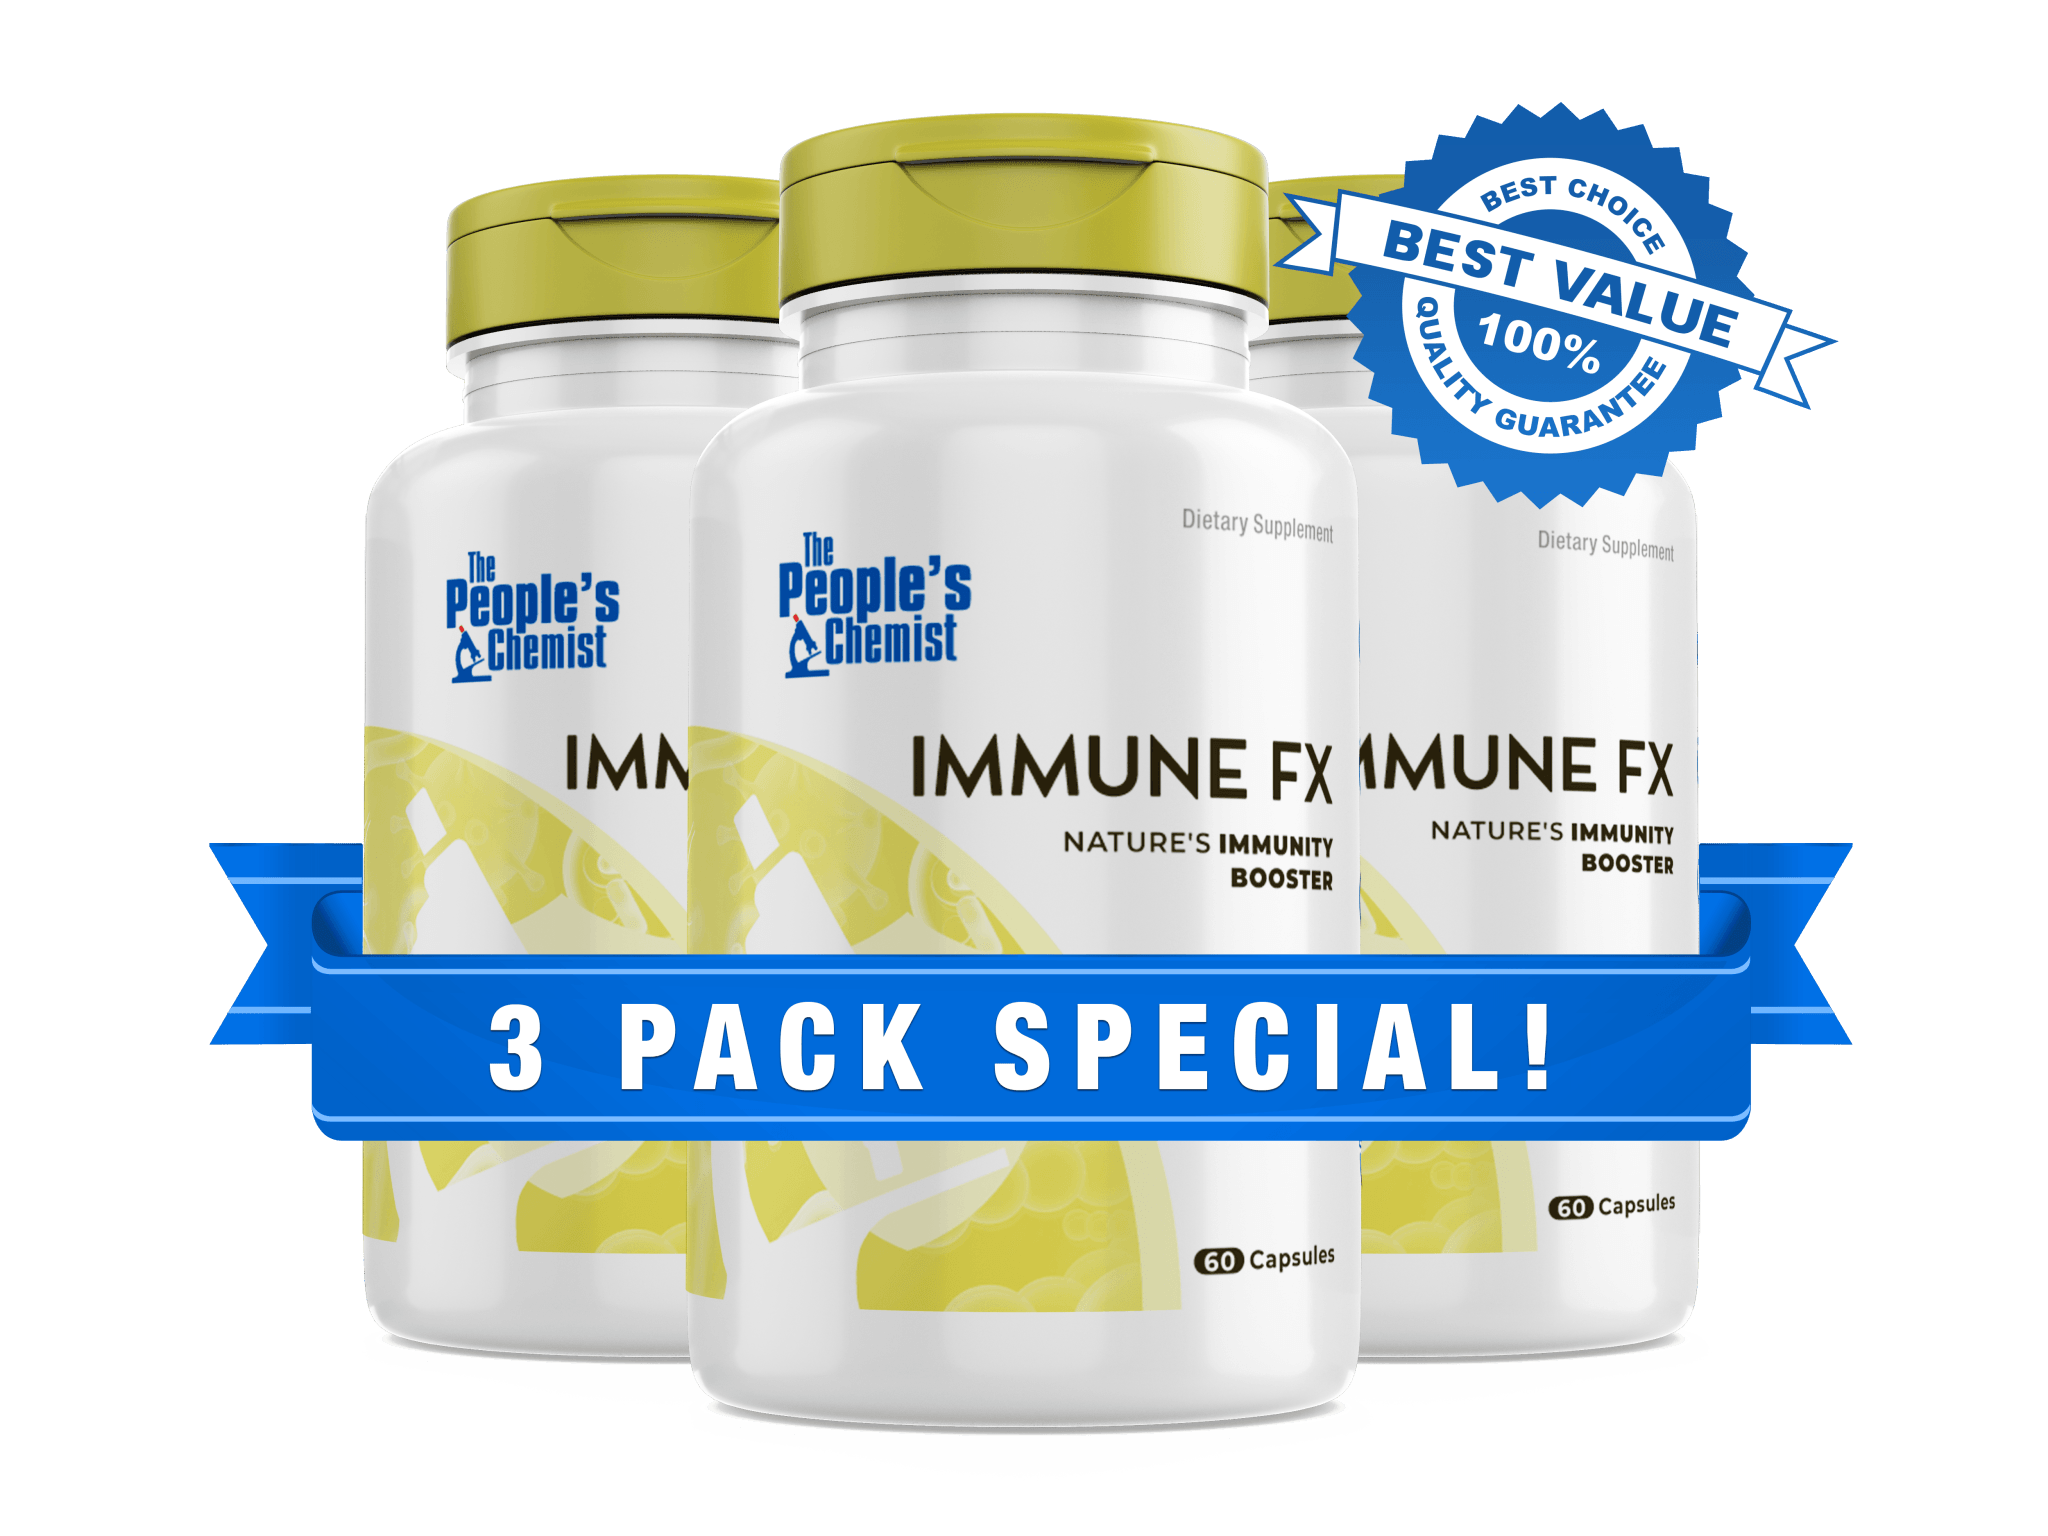 Immune FX 3-Pack Special Plus Free Report - Immune FX 3-Pack Special Plus Free Report - The People's Chemist - The People's Chemist